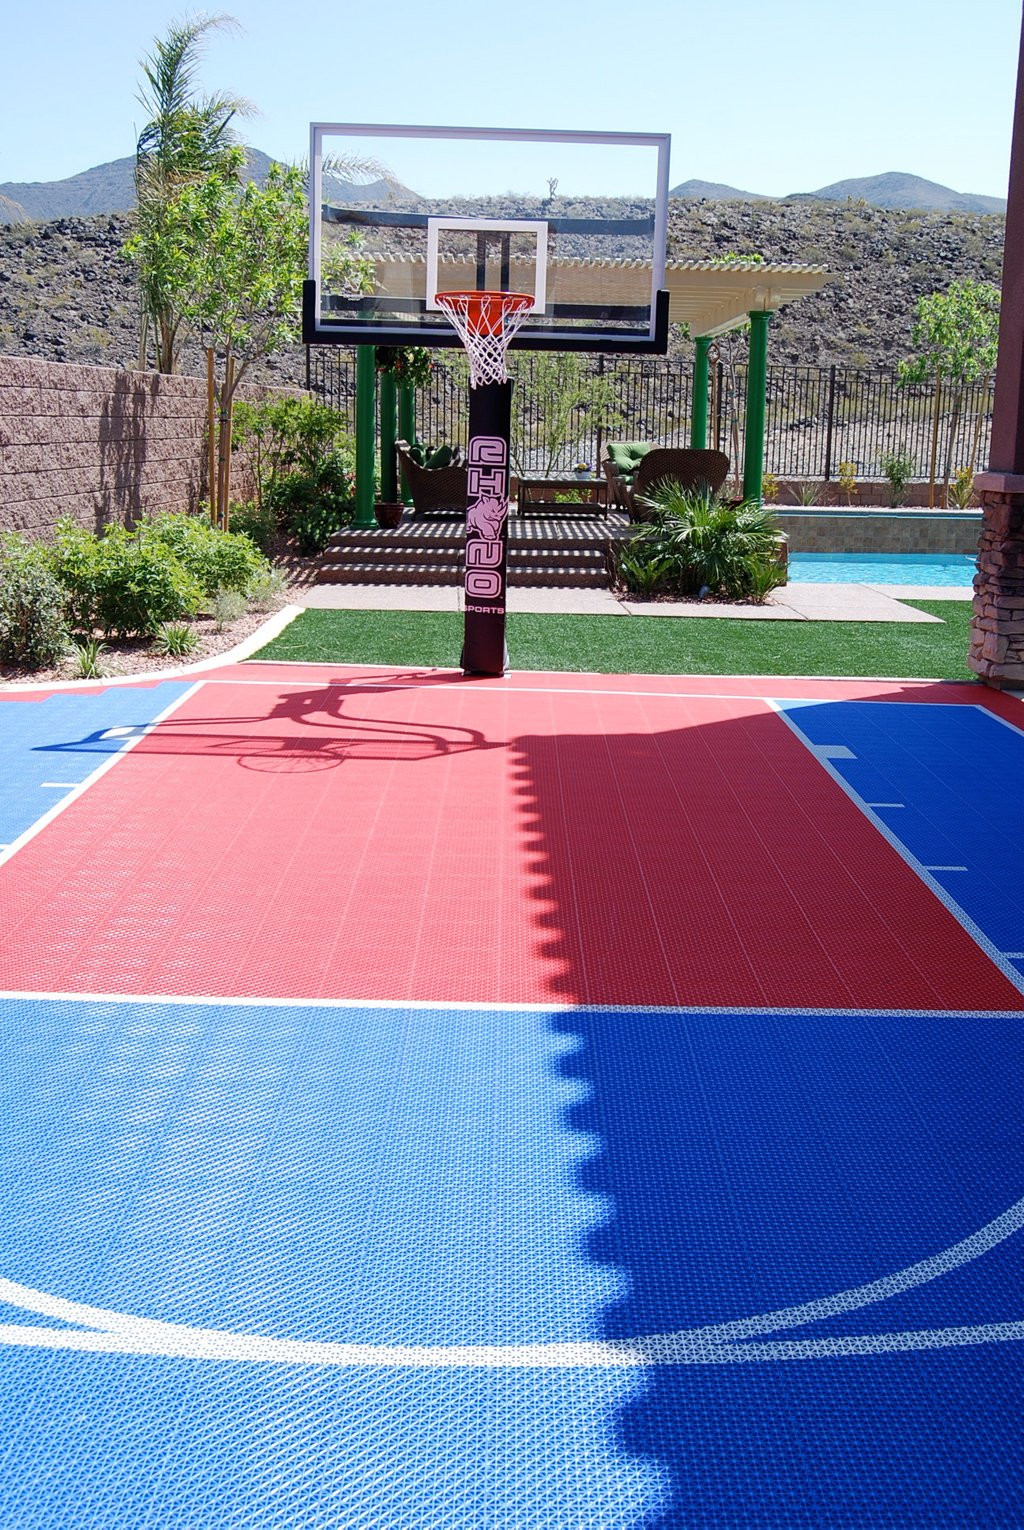 DIY Outdoor Basketball Court
 Best Backyard Basketball Court